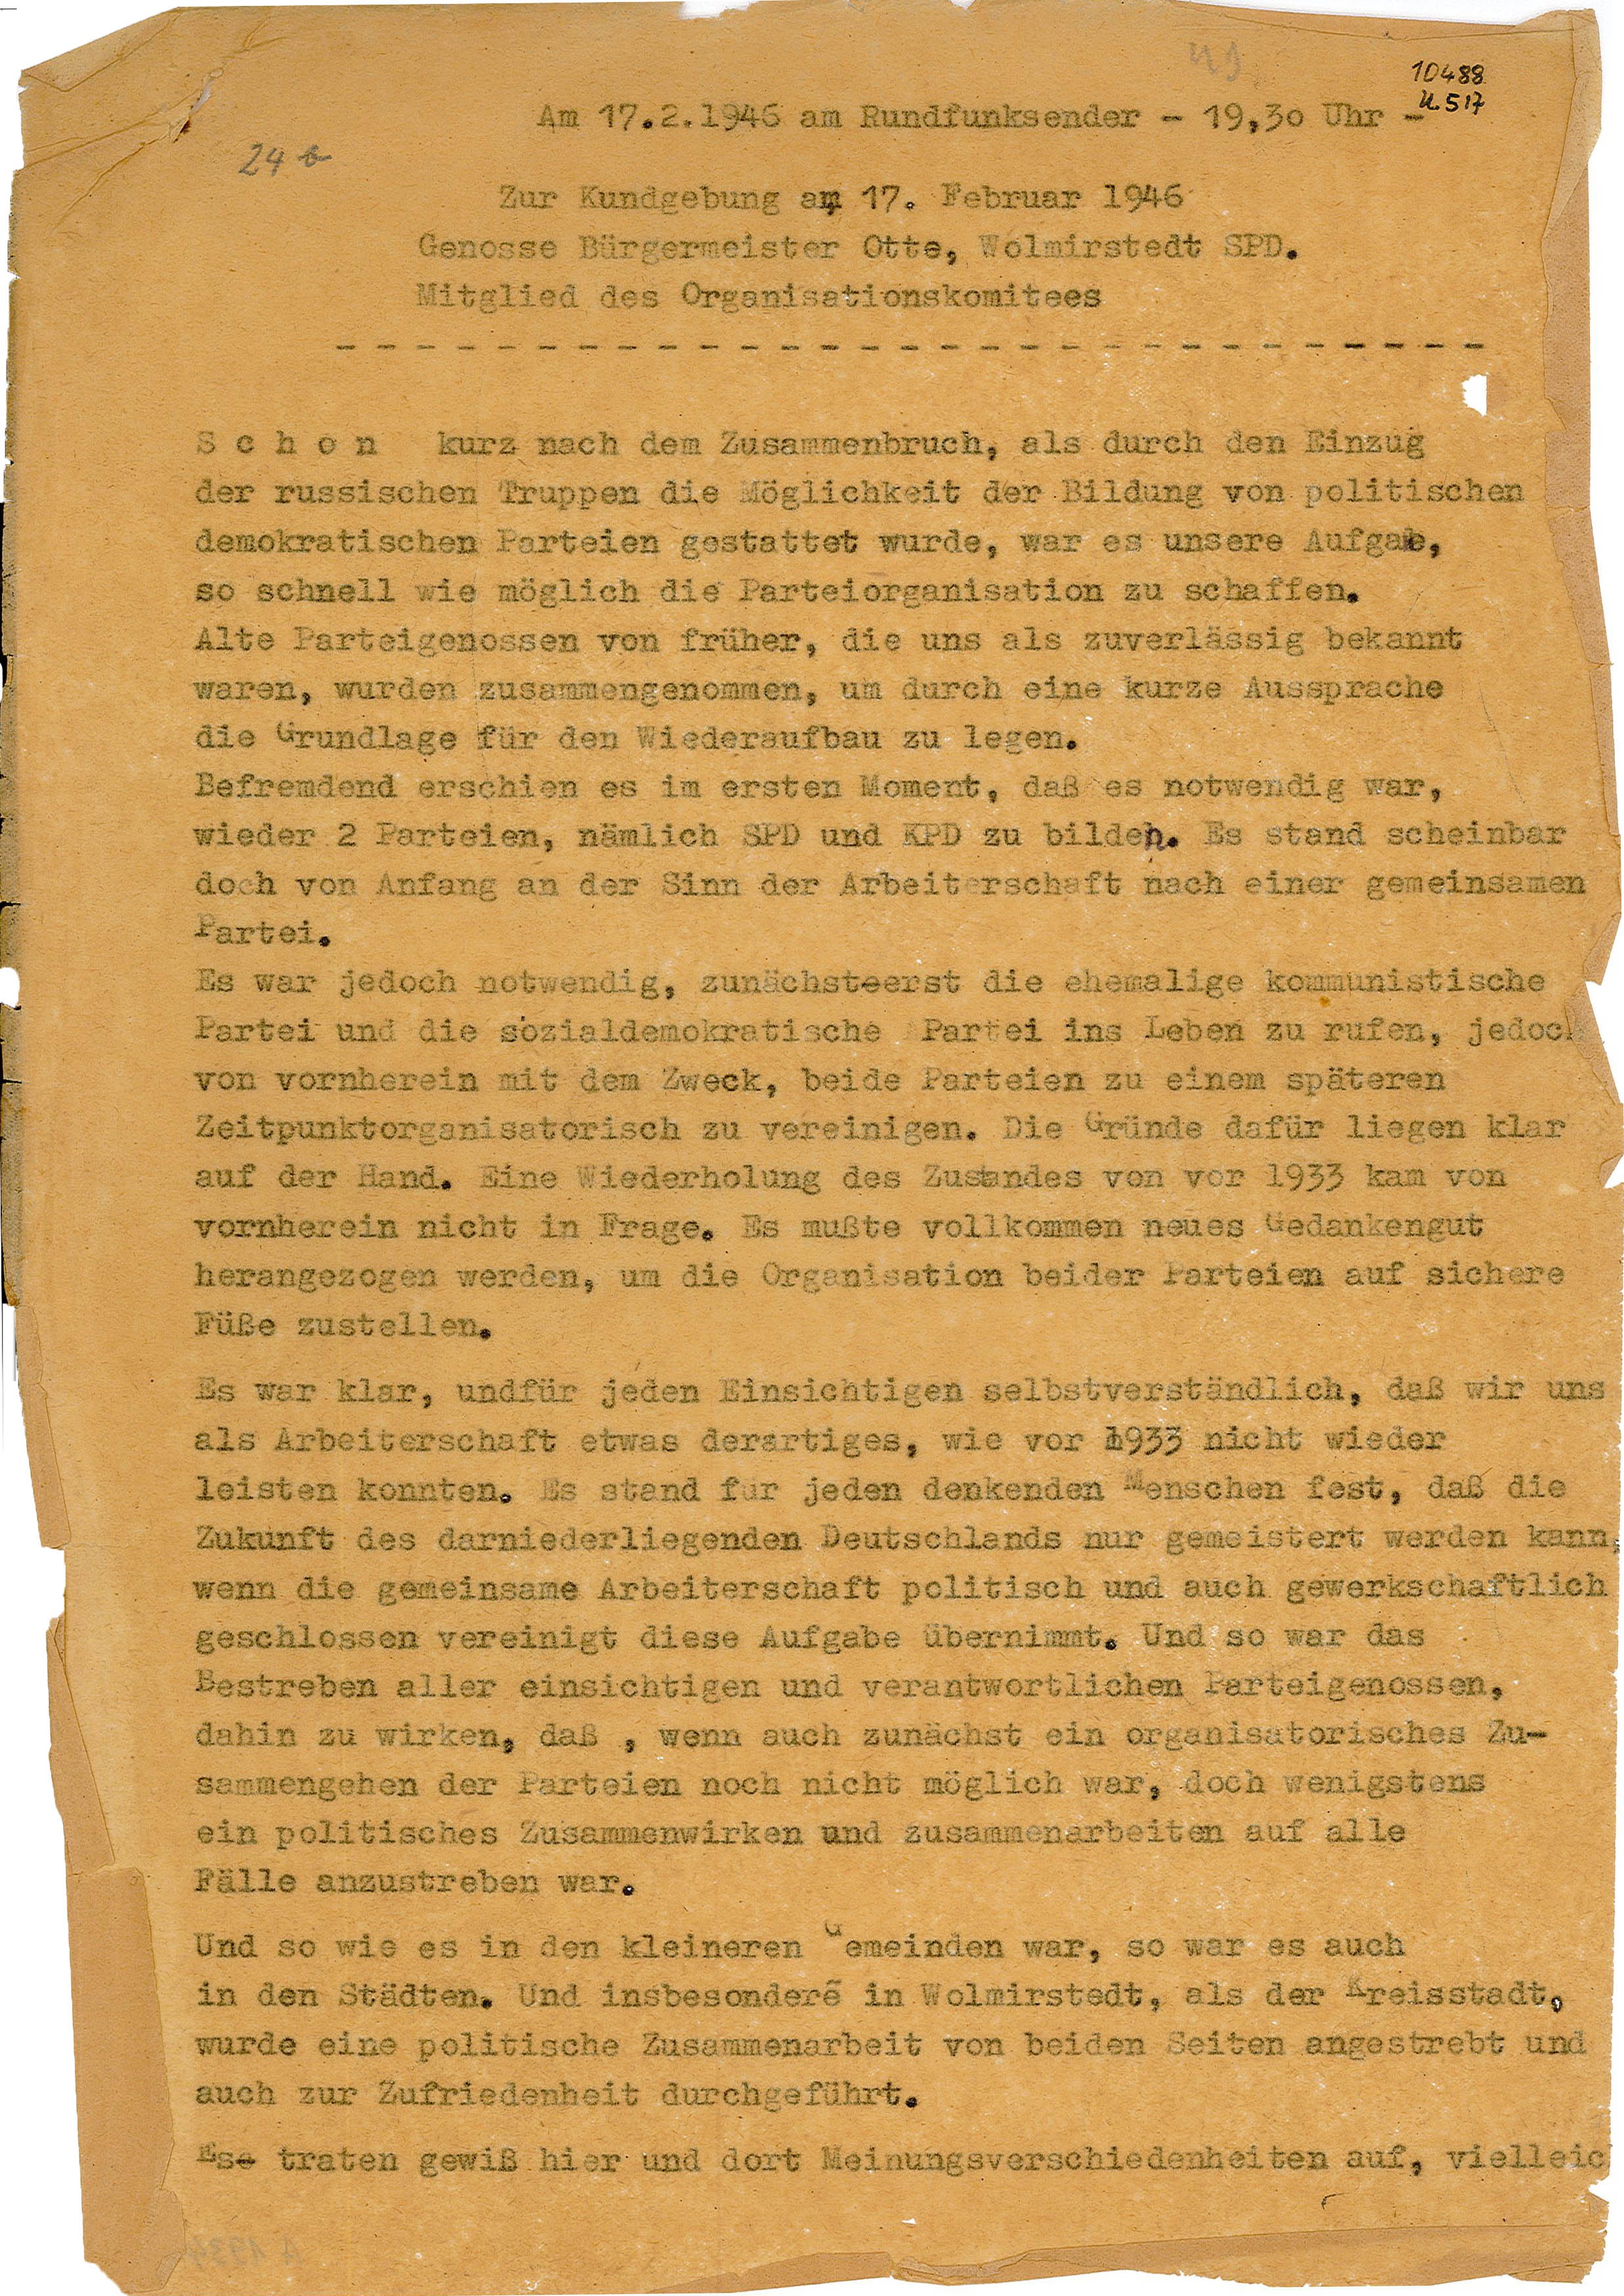 Protokoll zur Kundgebung am 17. Februar 1946 Wolmirstedt (Museum Wolmirstedt RR-F)